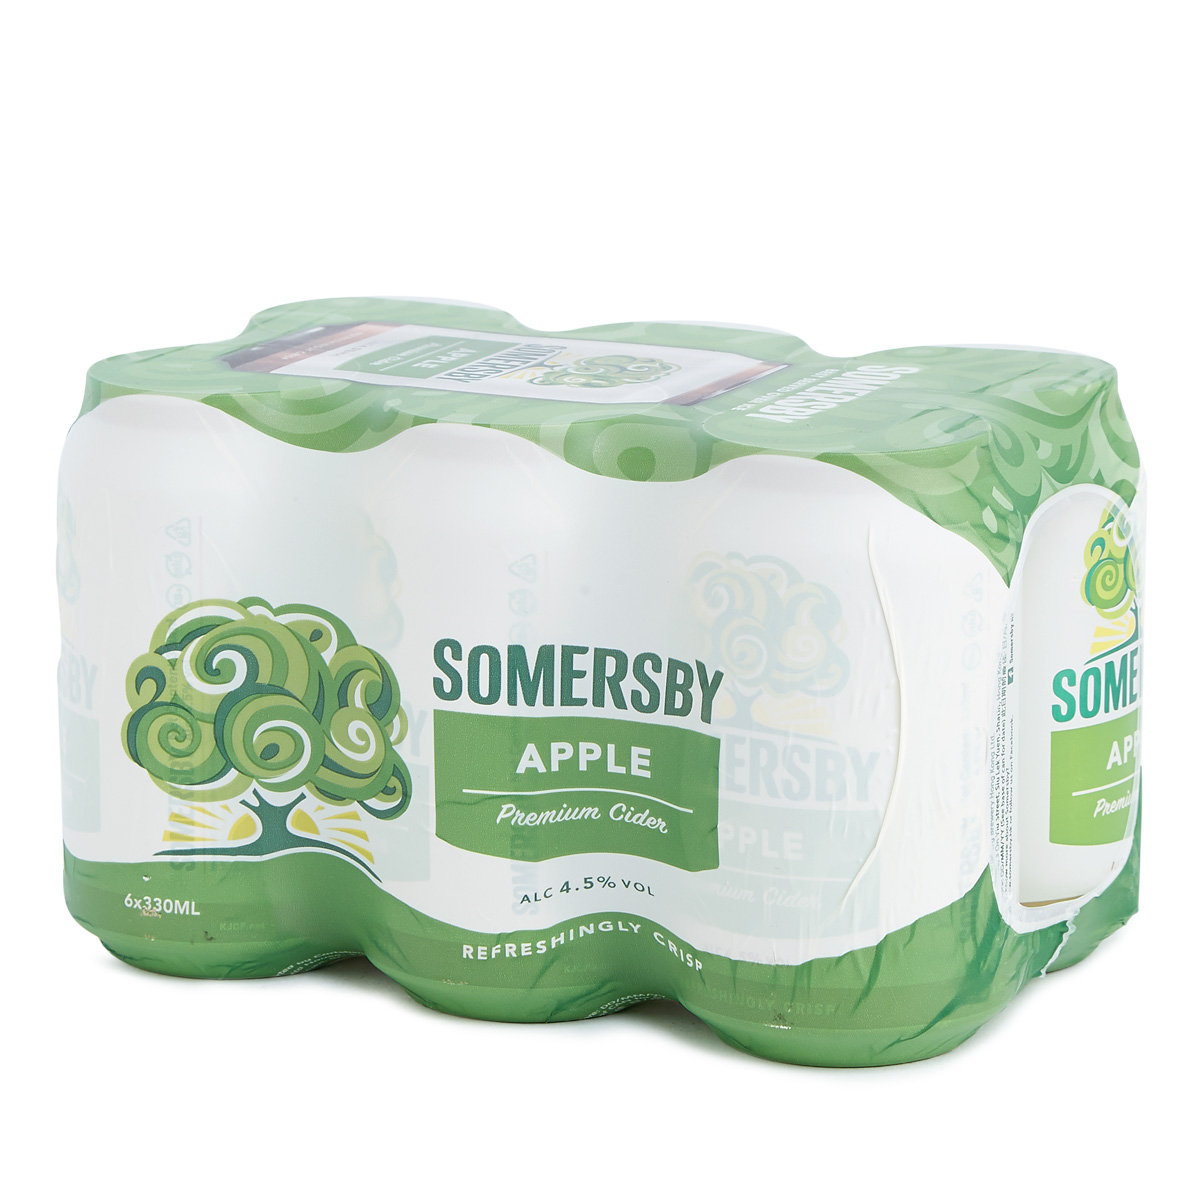 Somersby 蘋果酒 - Cider - 330ml x 6罐